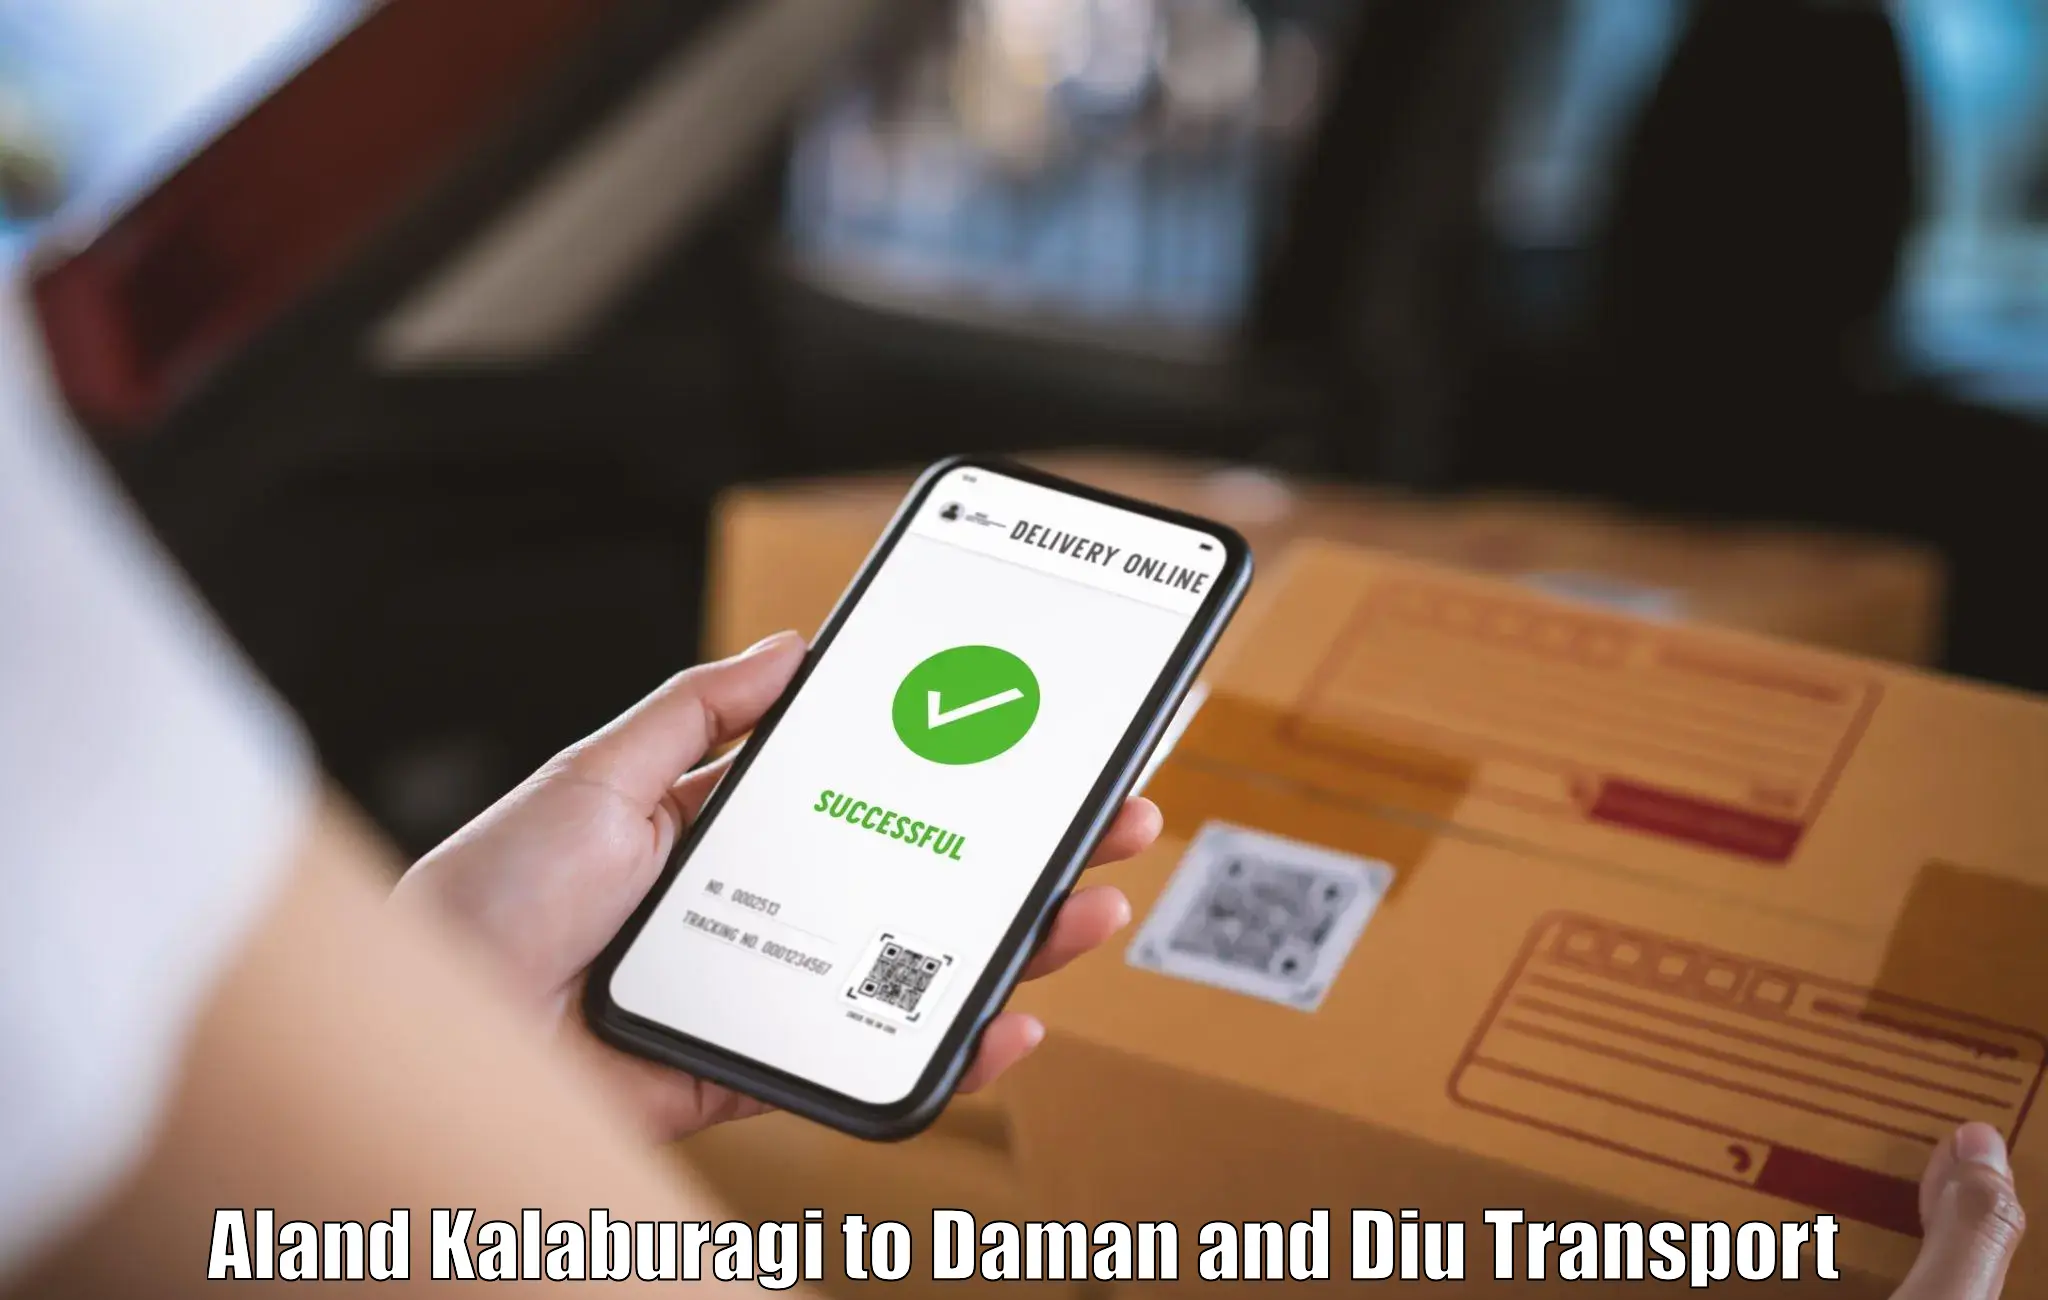 Daily parcel service transport Aland Kalaburagi to Diu